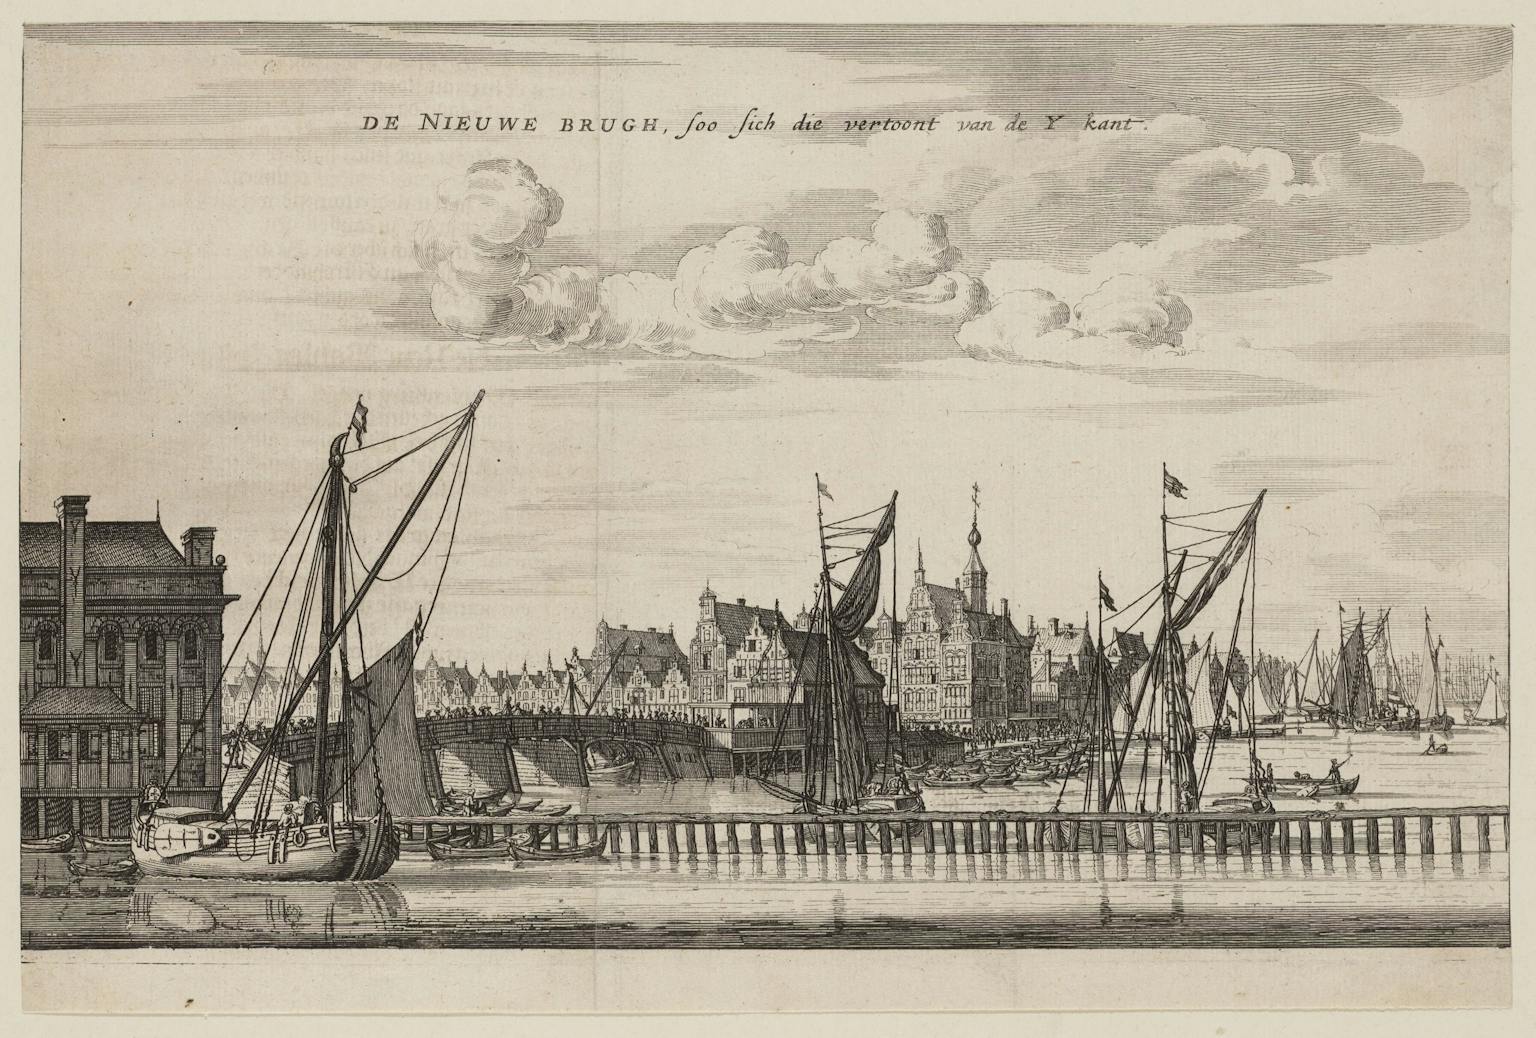 Gezicht op de Nieuwe Brug met het Paalhuis, gezien vanaf het IJ, 1663.